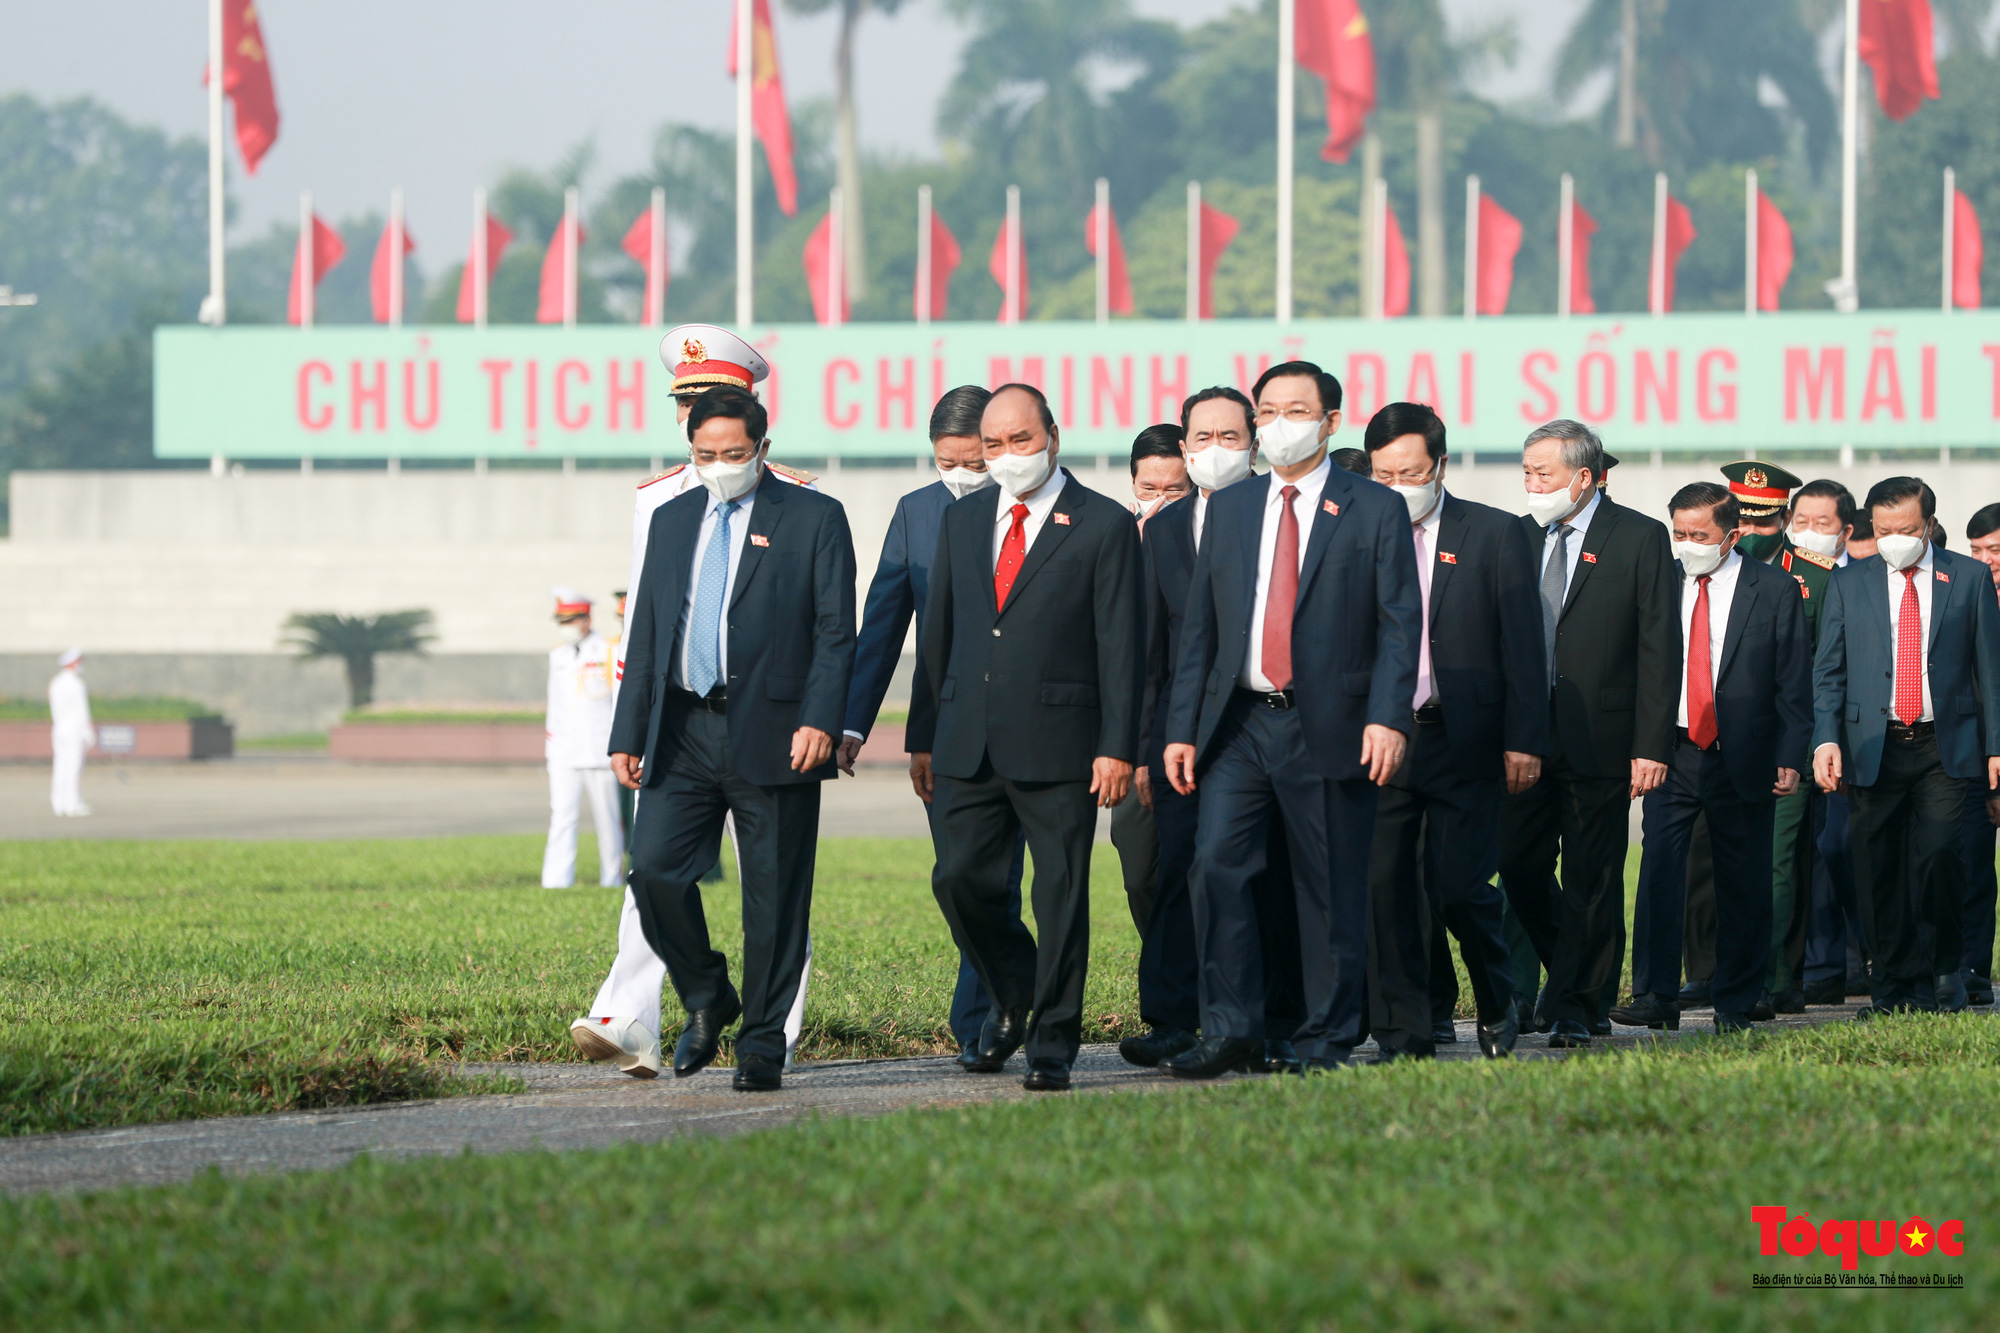 Đại biểu viếng Chủ tịch Hồ Chí Minh trước khai mạc kỳ họp thứ 2 Quốc hội khóa XV - Ảnh 9.